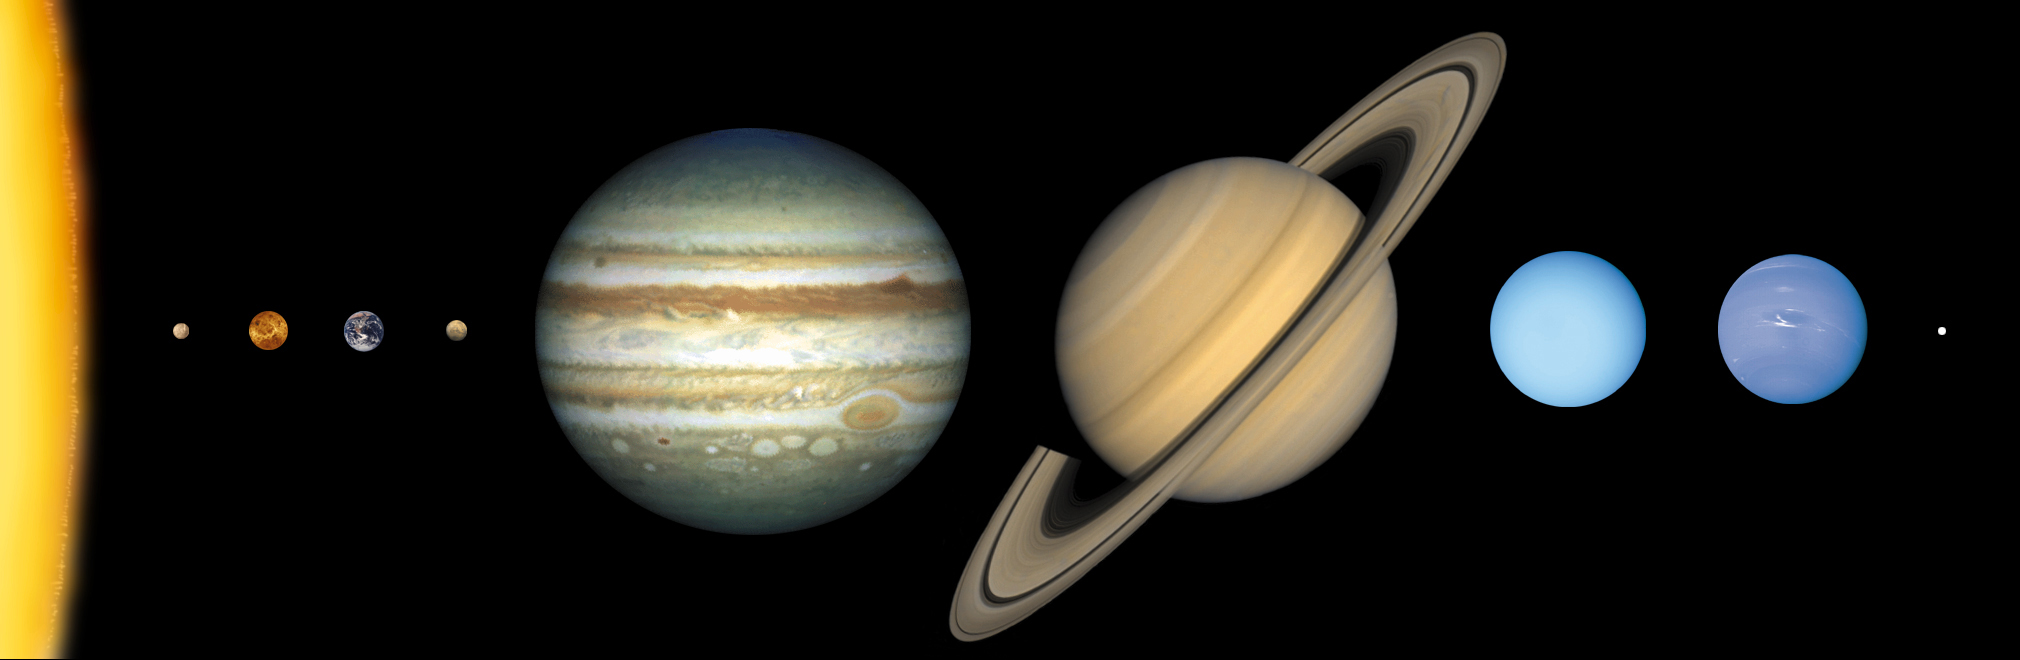 Solar System Sizes | solarsystem.nasa.gov